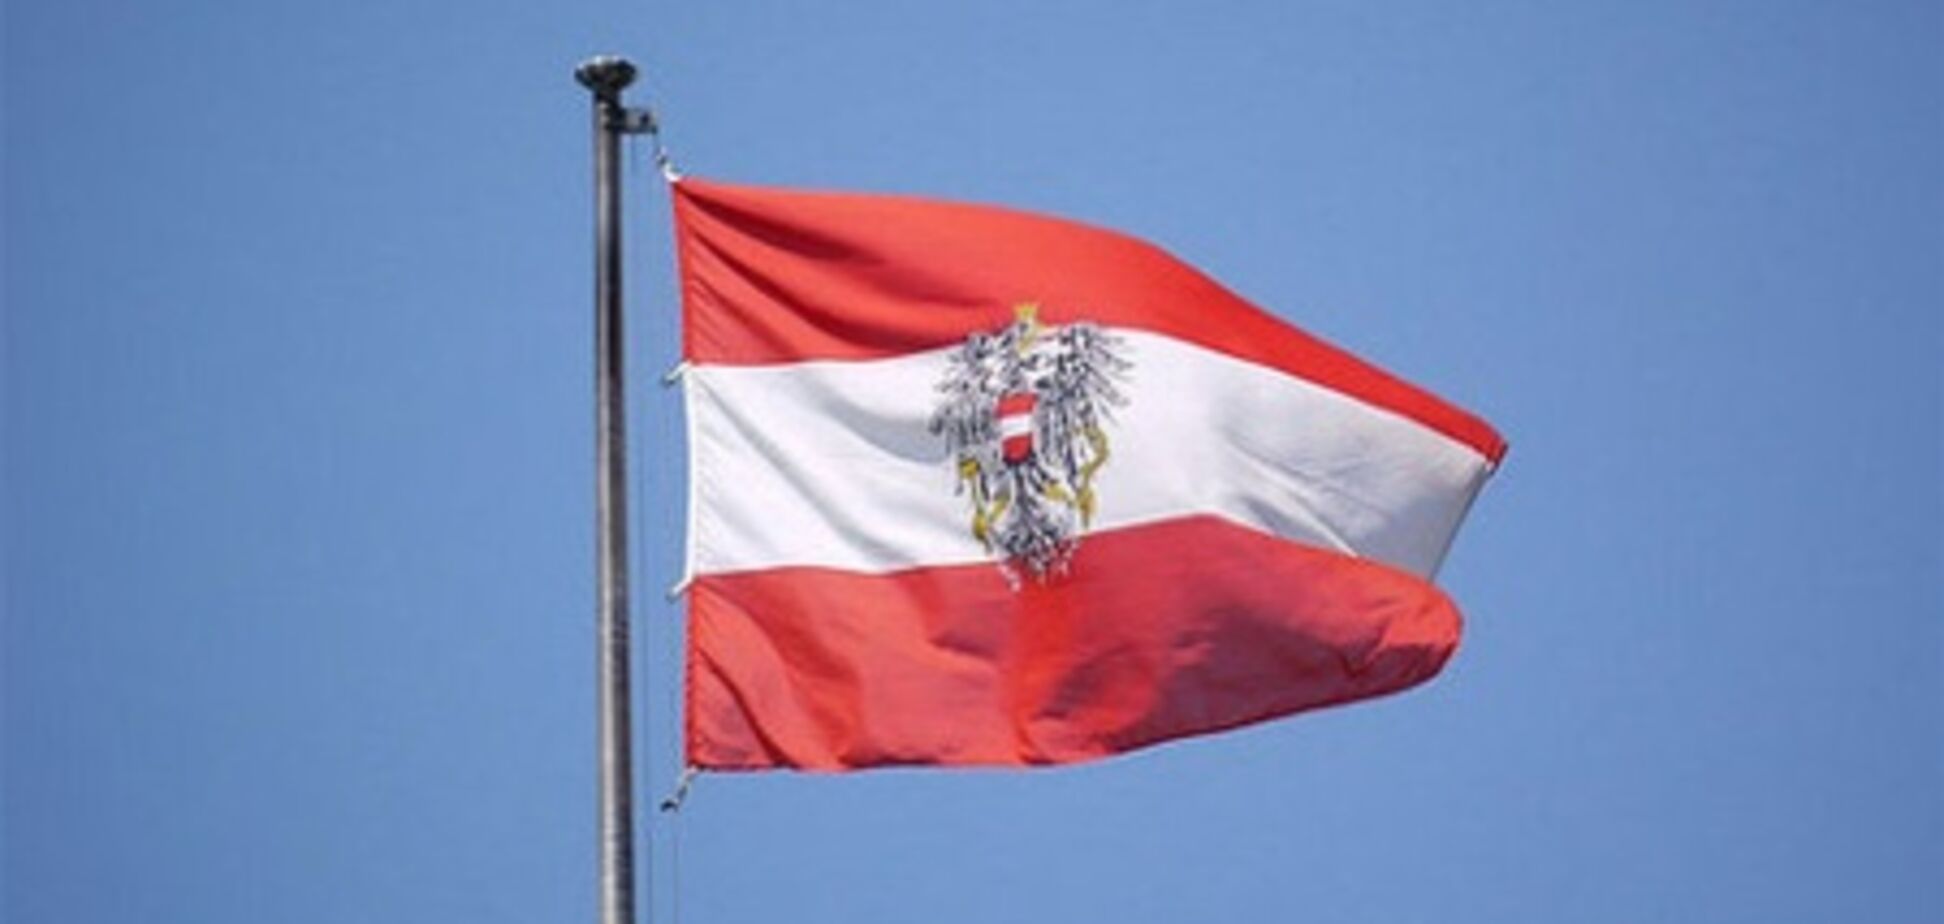 Более 60% австрийцев хотели бы видеть у власти диктатора - опрос